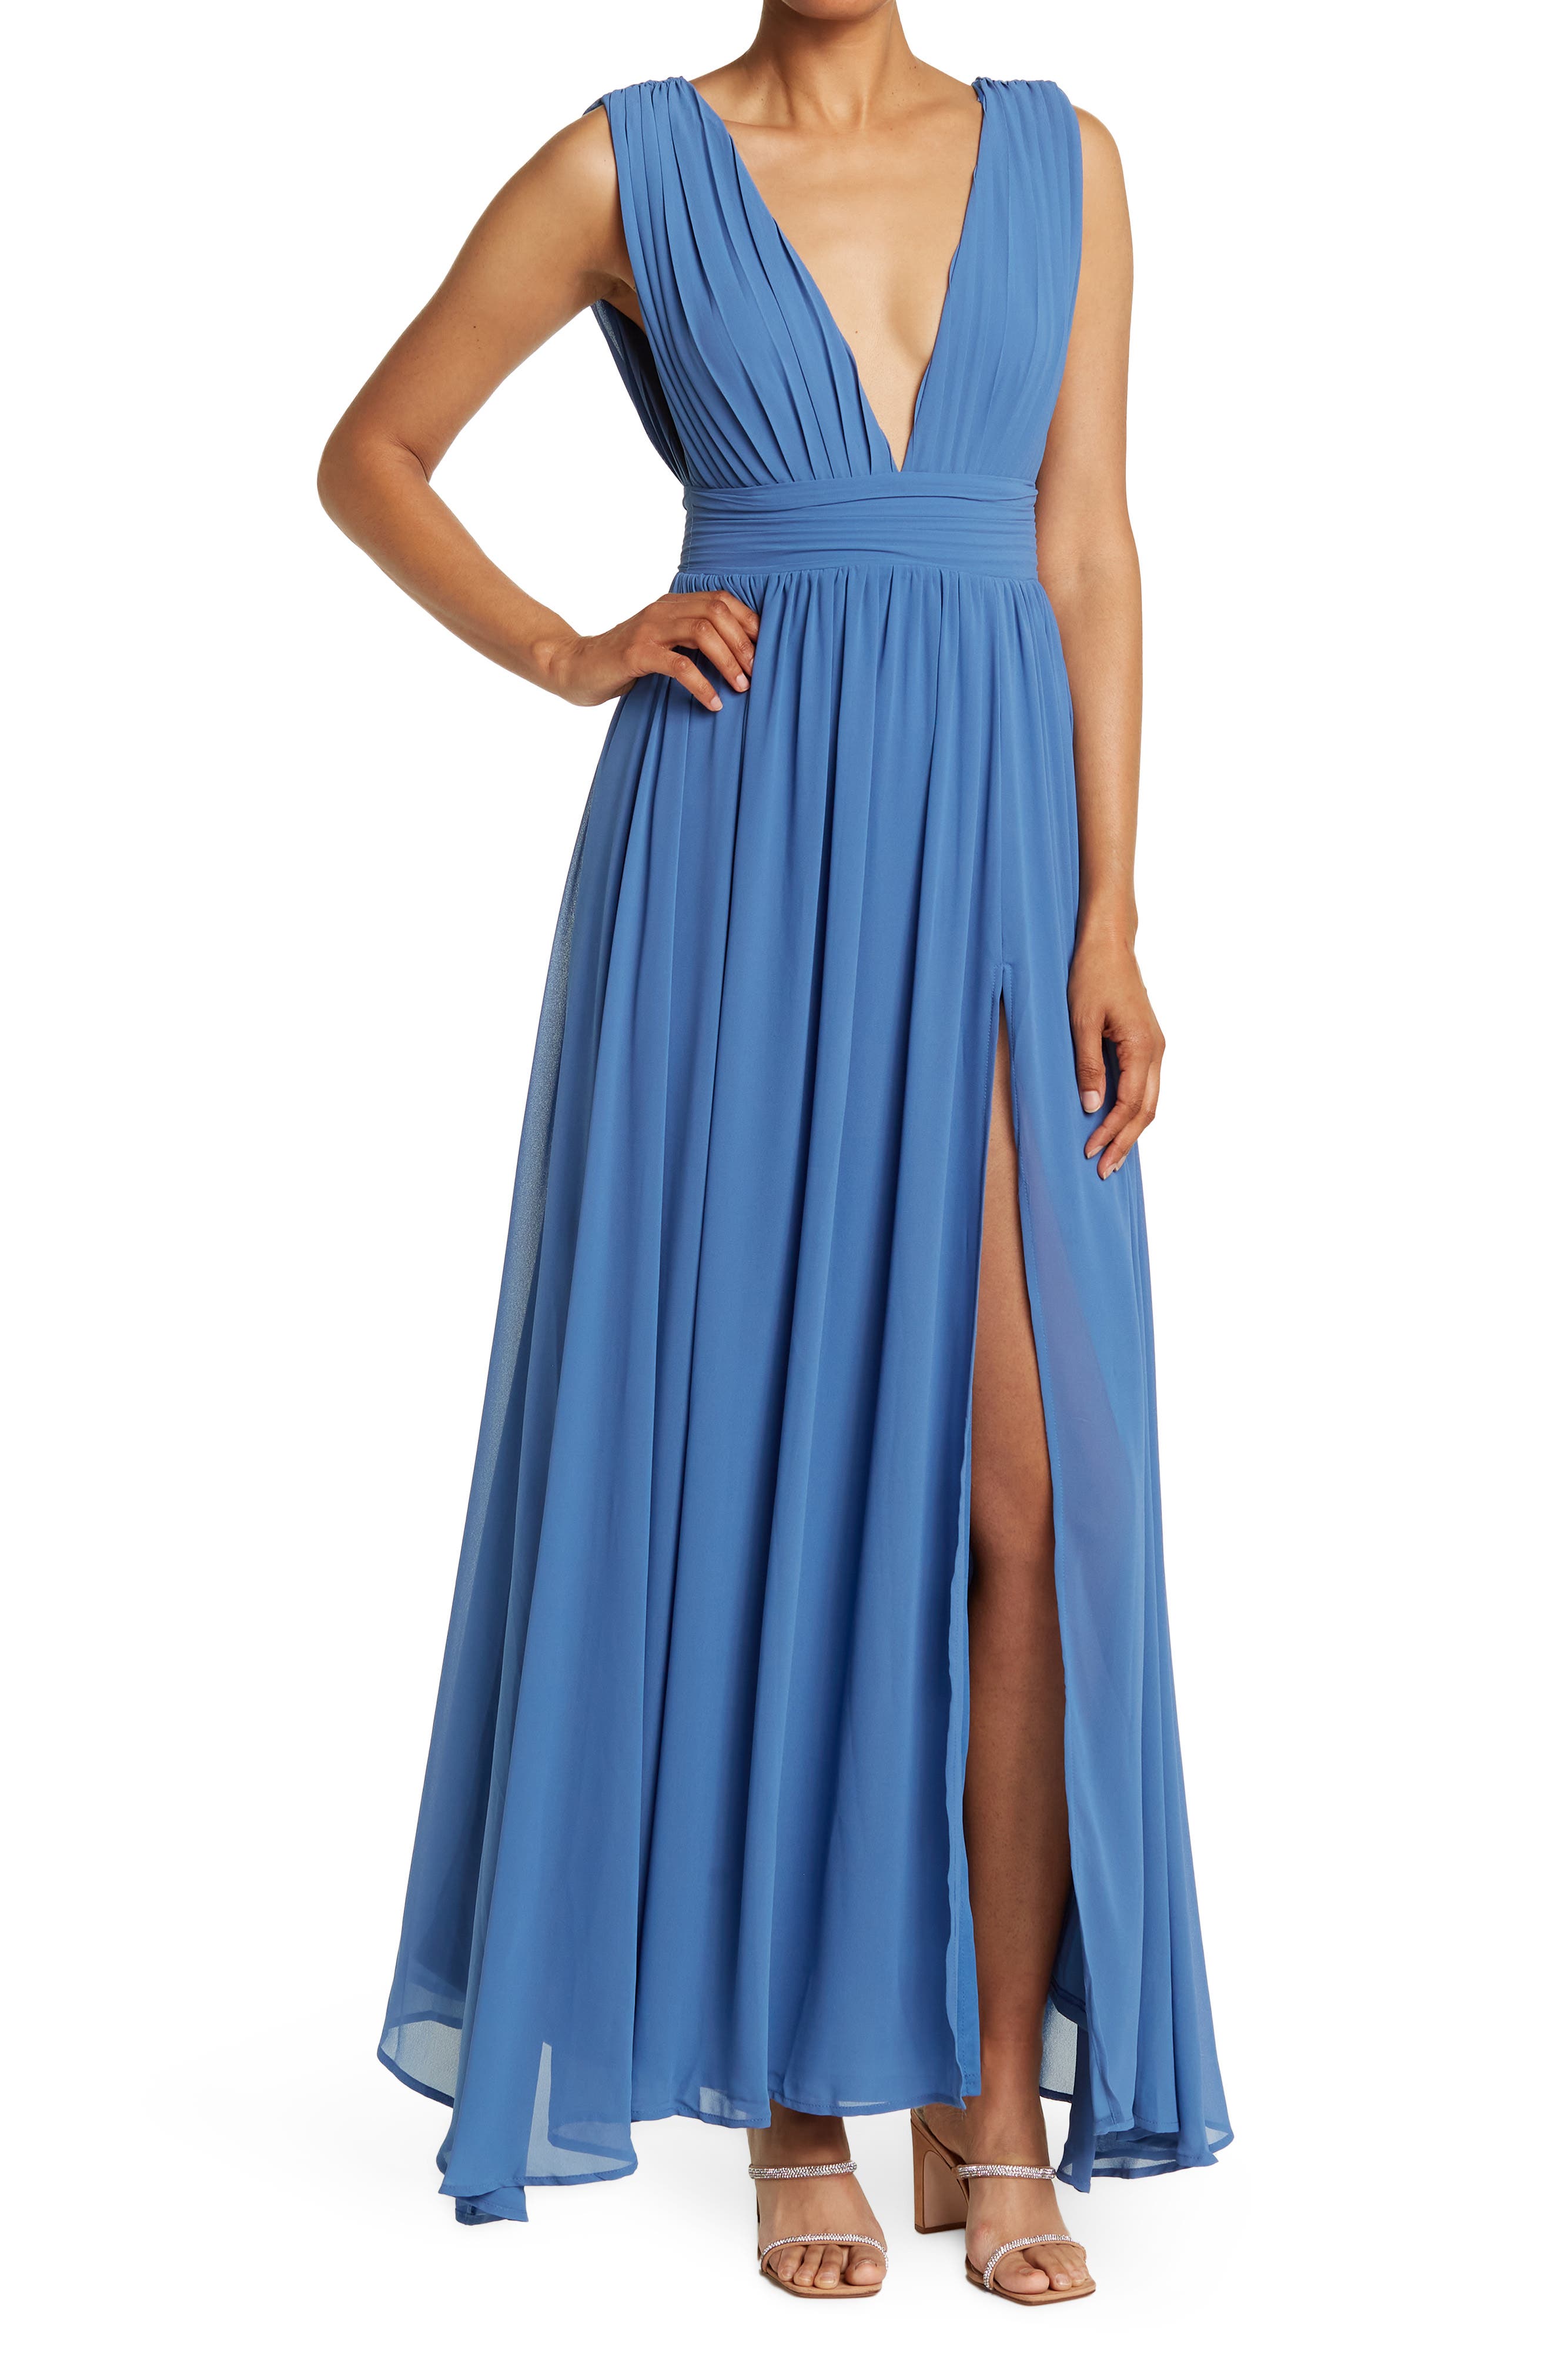 Blue Cocktail ☀ Party Dresses ...